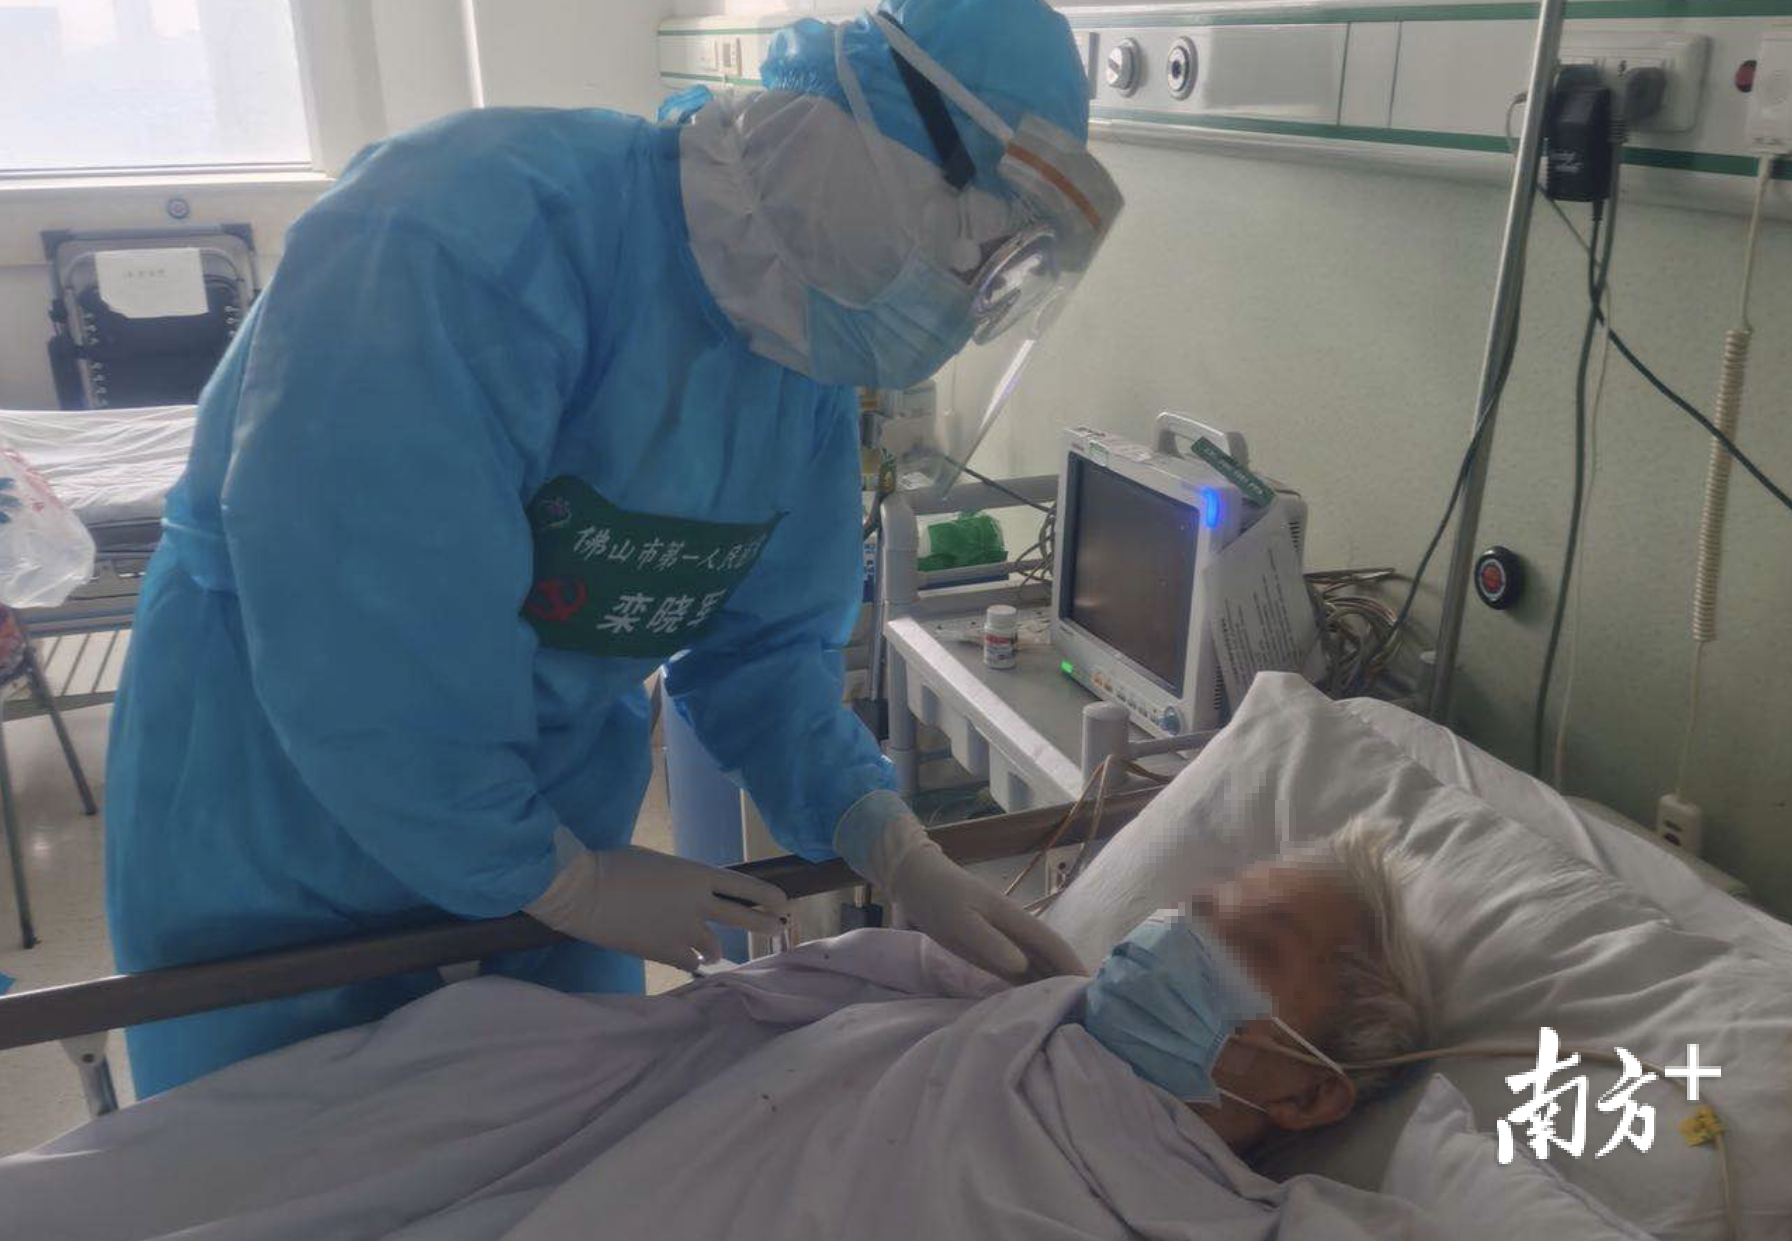 栾晓军博士援助武汉第一医院救治新冠肺炎患者。